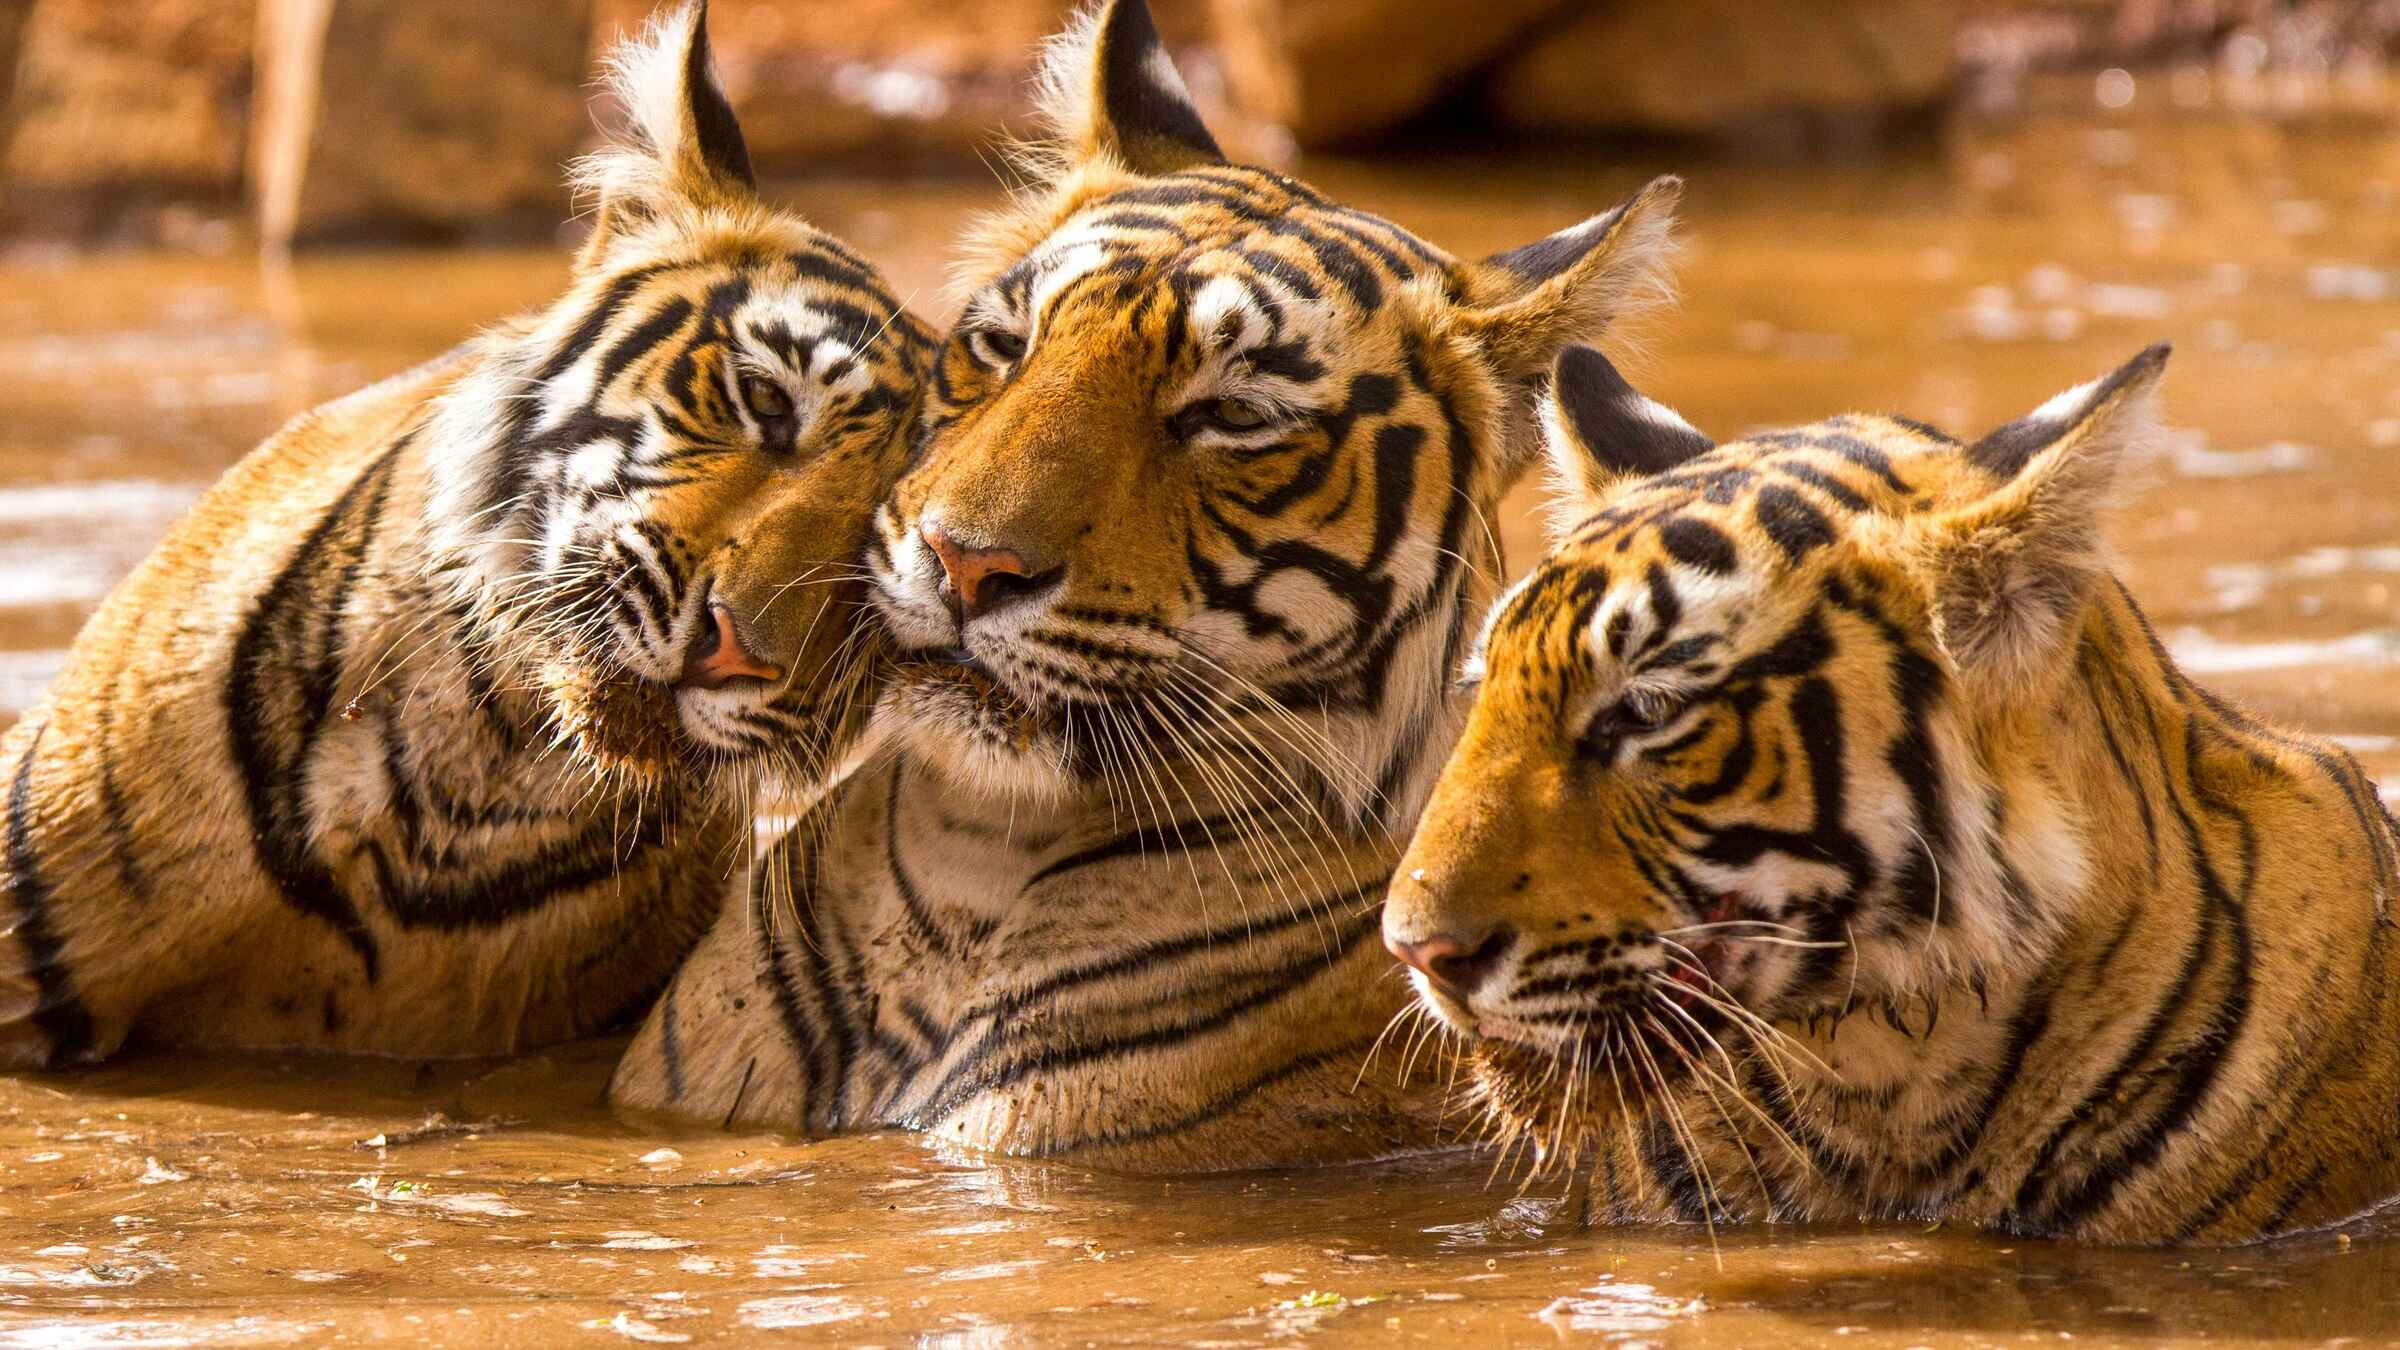 ranthambore tiger safari review